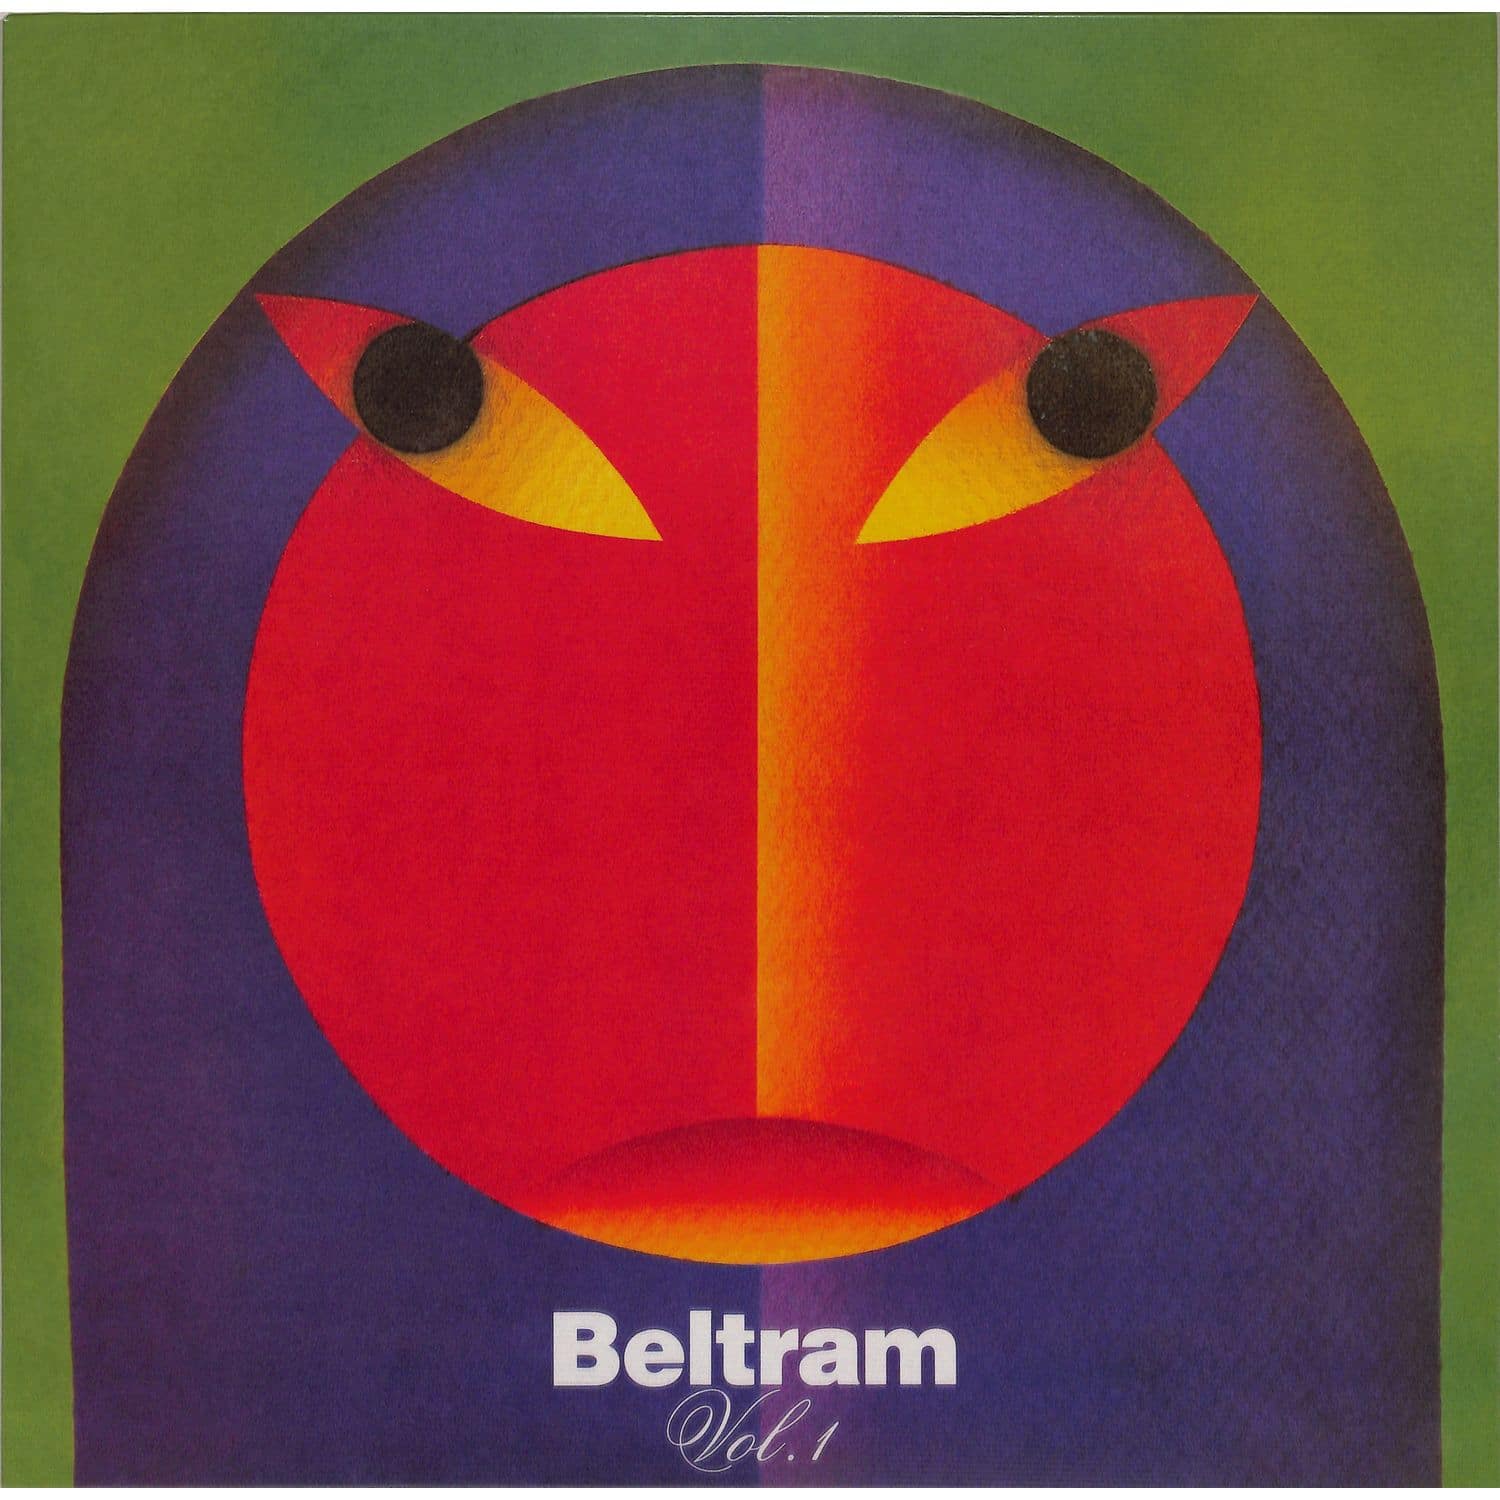 Joey Beltram - BELTRAM VOL 1 